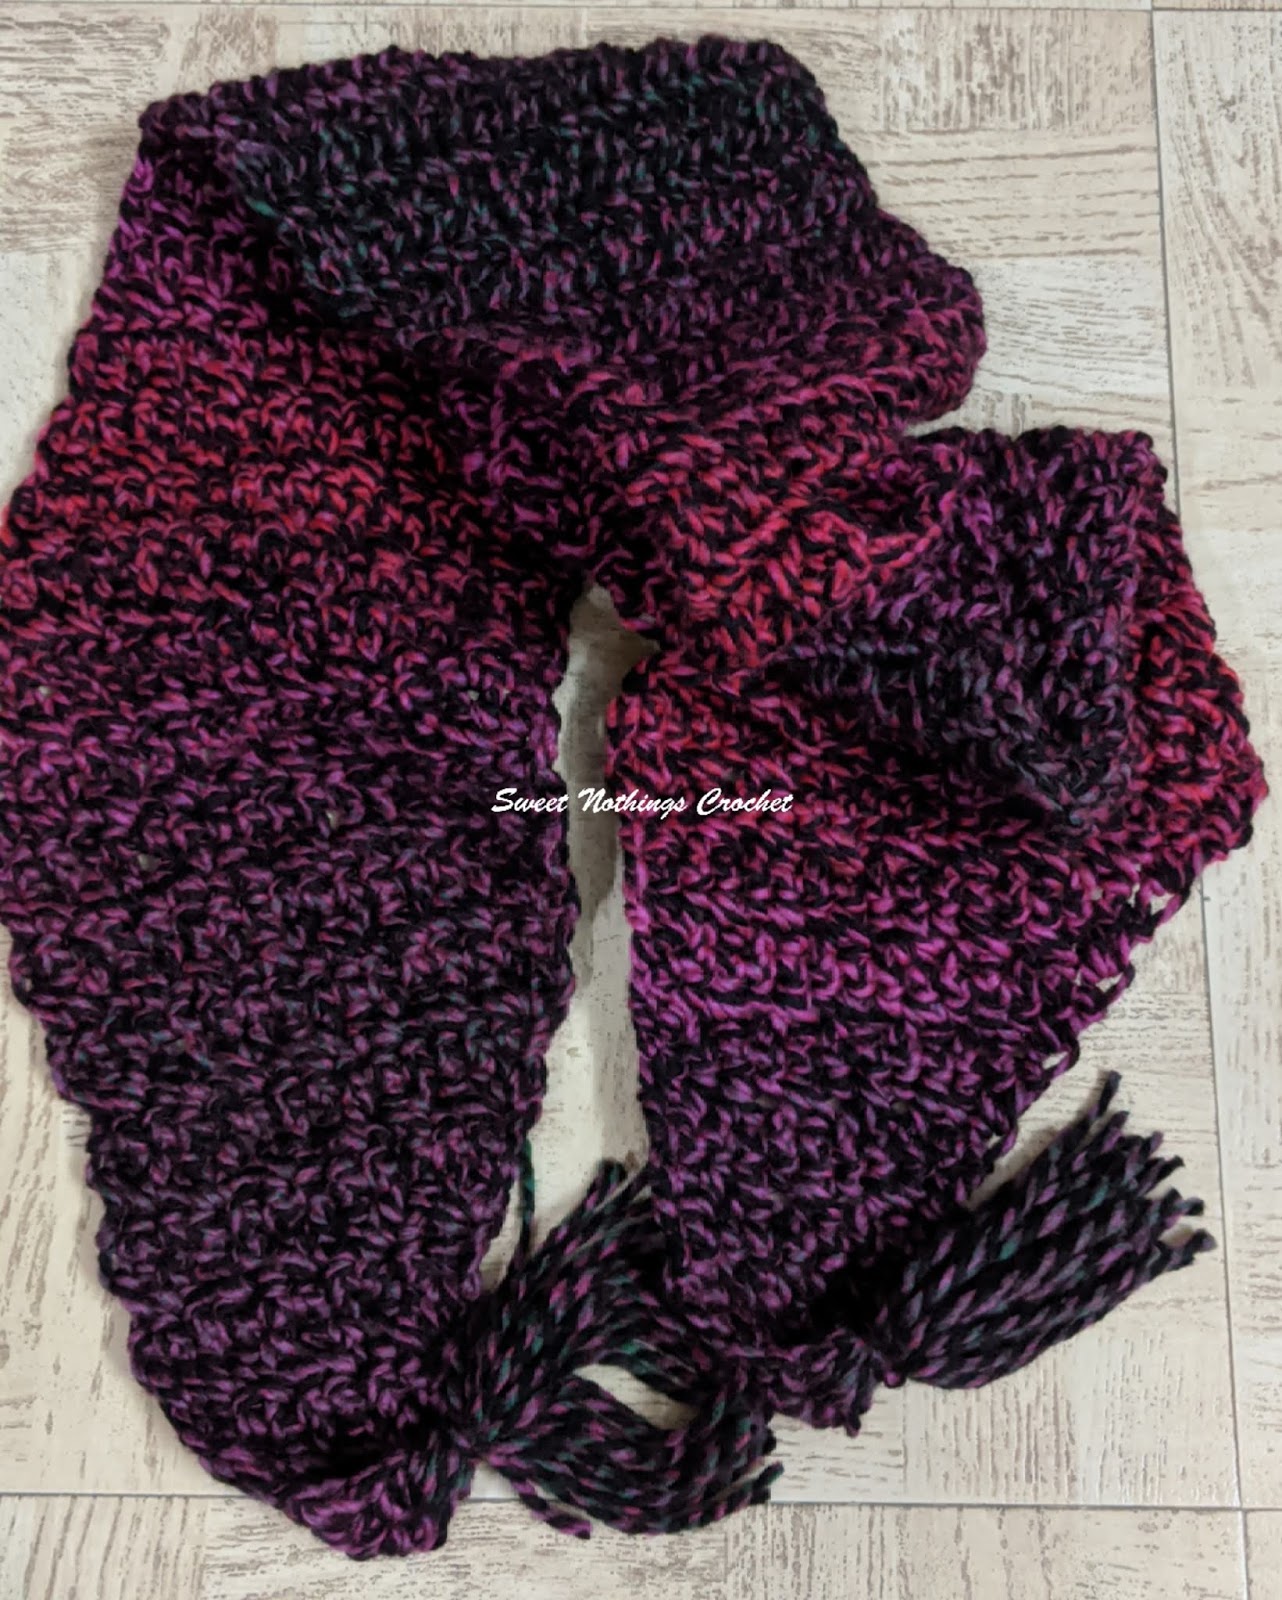 Sweet Nothings Crochet: ZEBRA SCARF